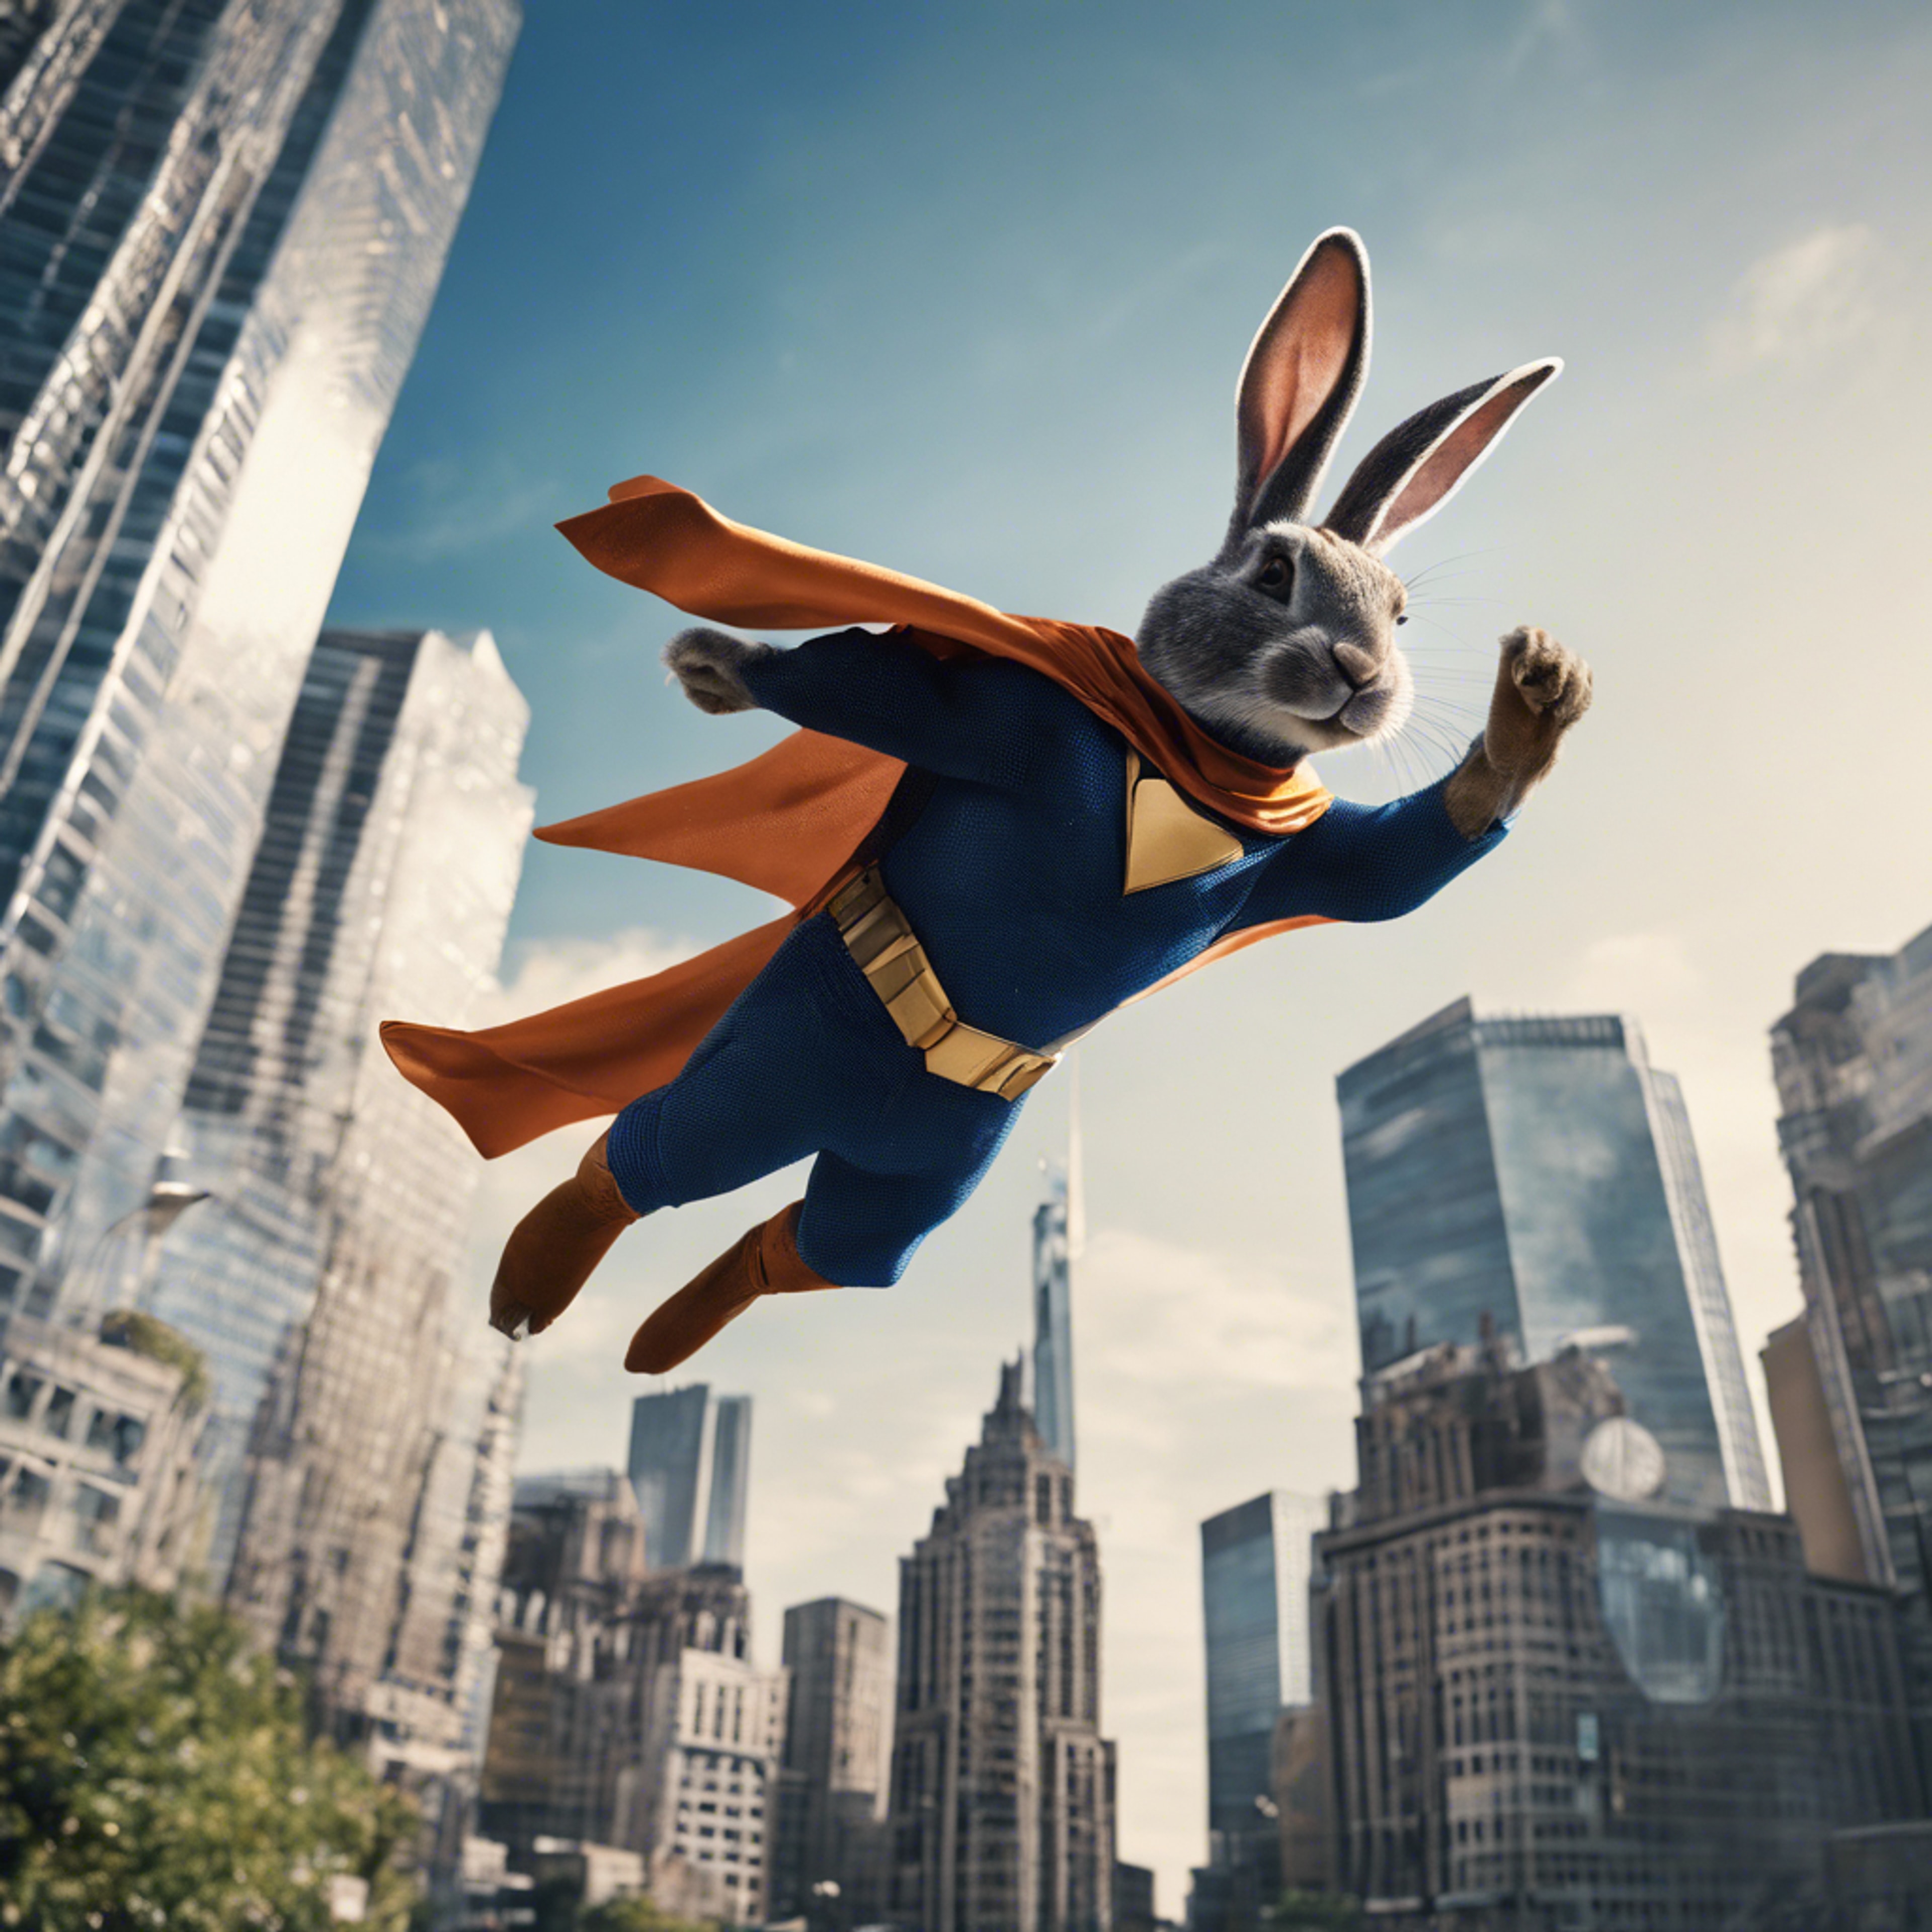 A rabbit superhero soaring above skyscrapers in a bustling city. Tapeta[841b91138e24419cbc55]